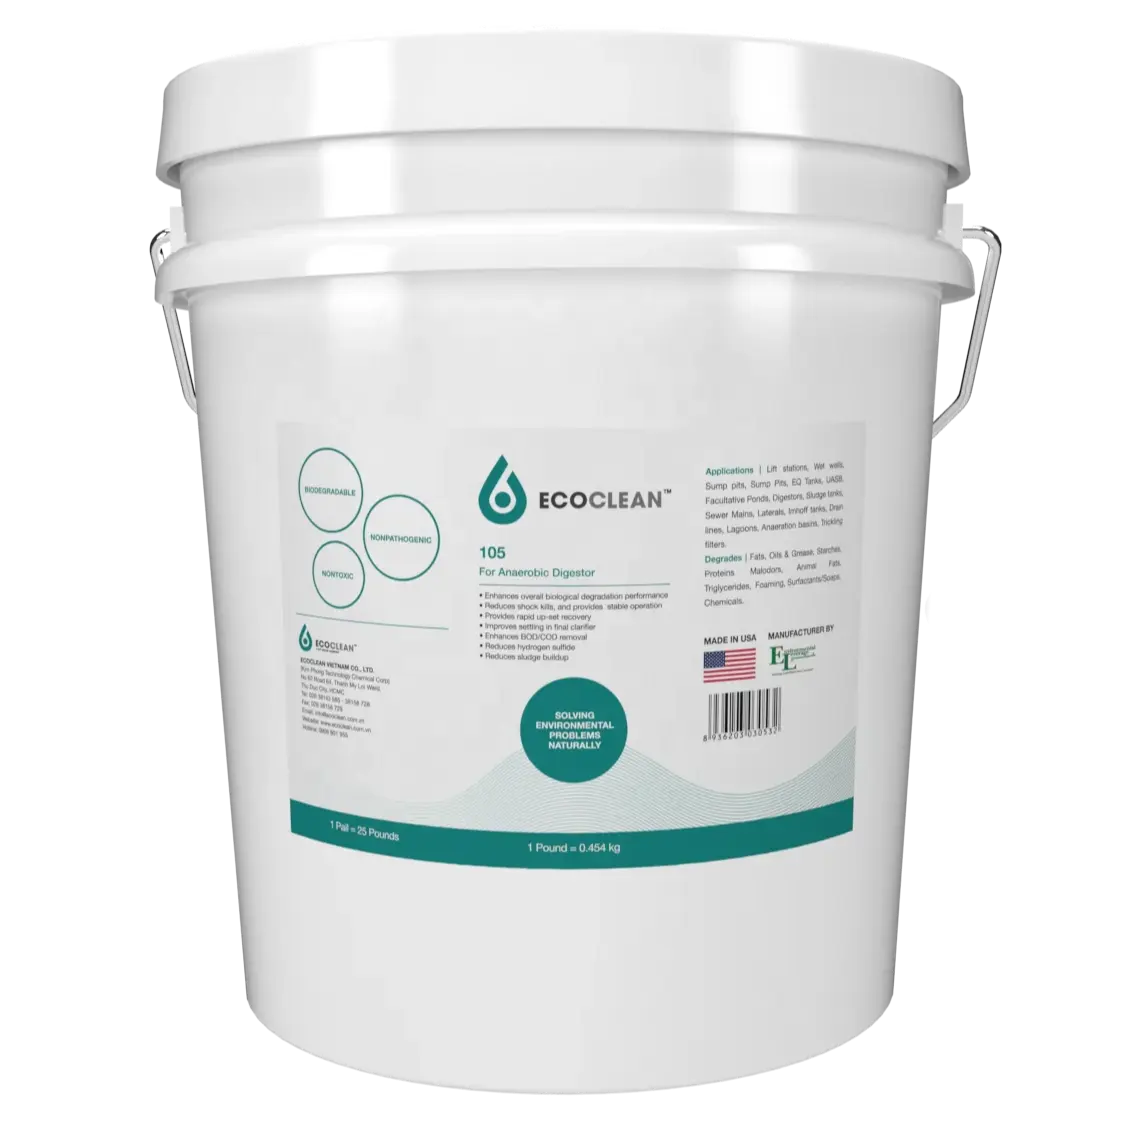 एनाएरोबिक डाइजेस्टर ऑग्मेंटेशन के लिए OEM अनुकूलित सेवा औद्योगिक अपशिष्ट जल उपचार प्रोबायोटिक्स इकोक्लीन 105